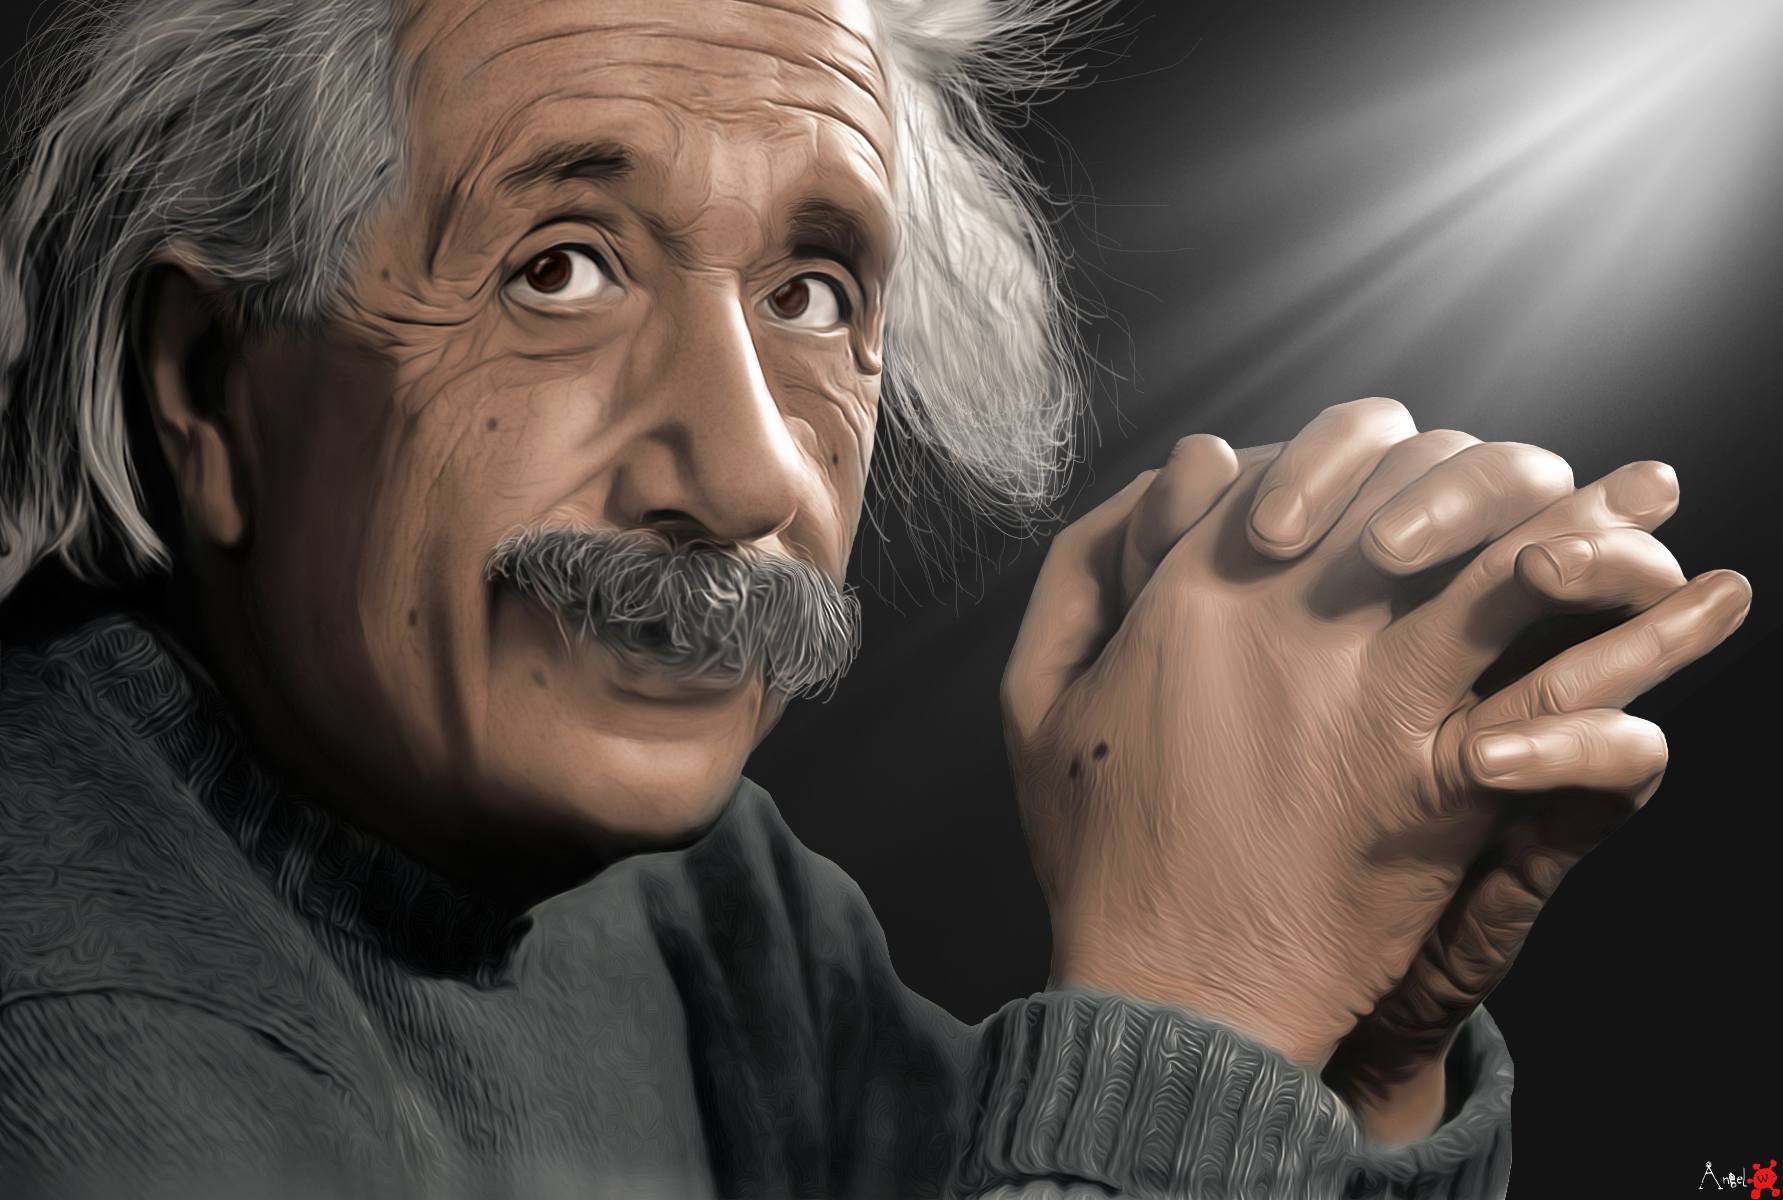 Albert Einstein Digital Scientists Science Physics 1783x1200